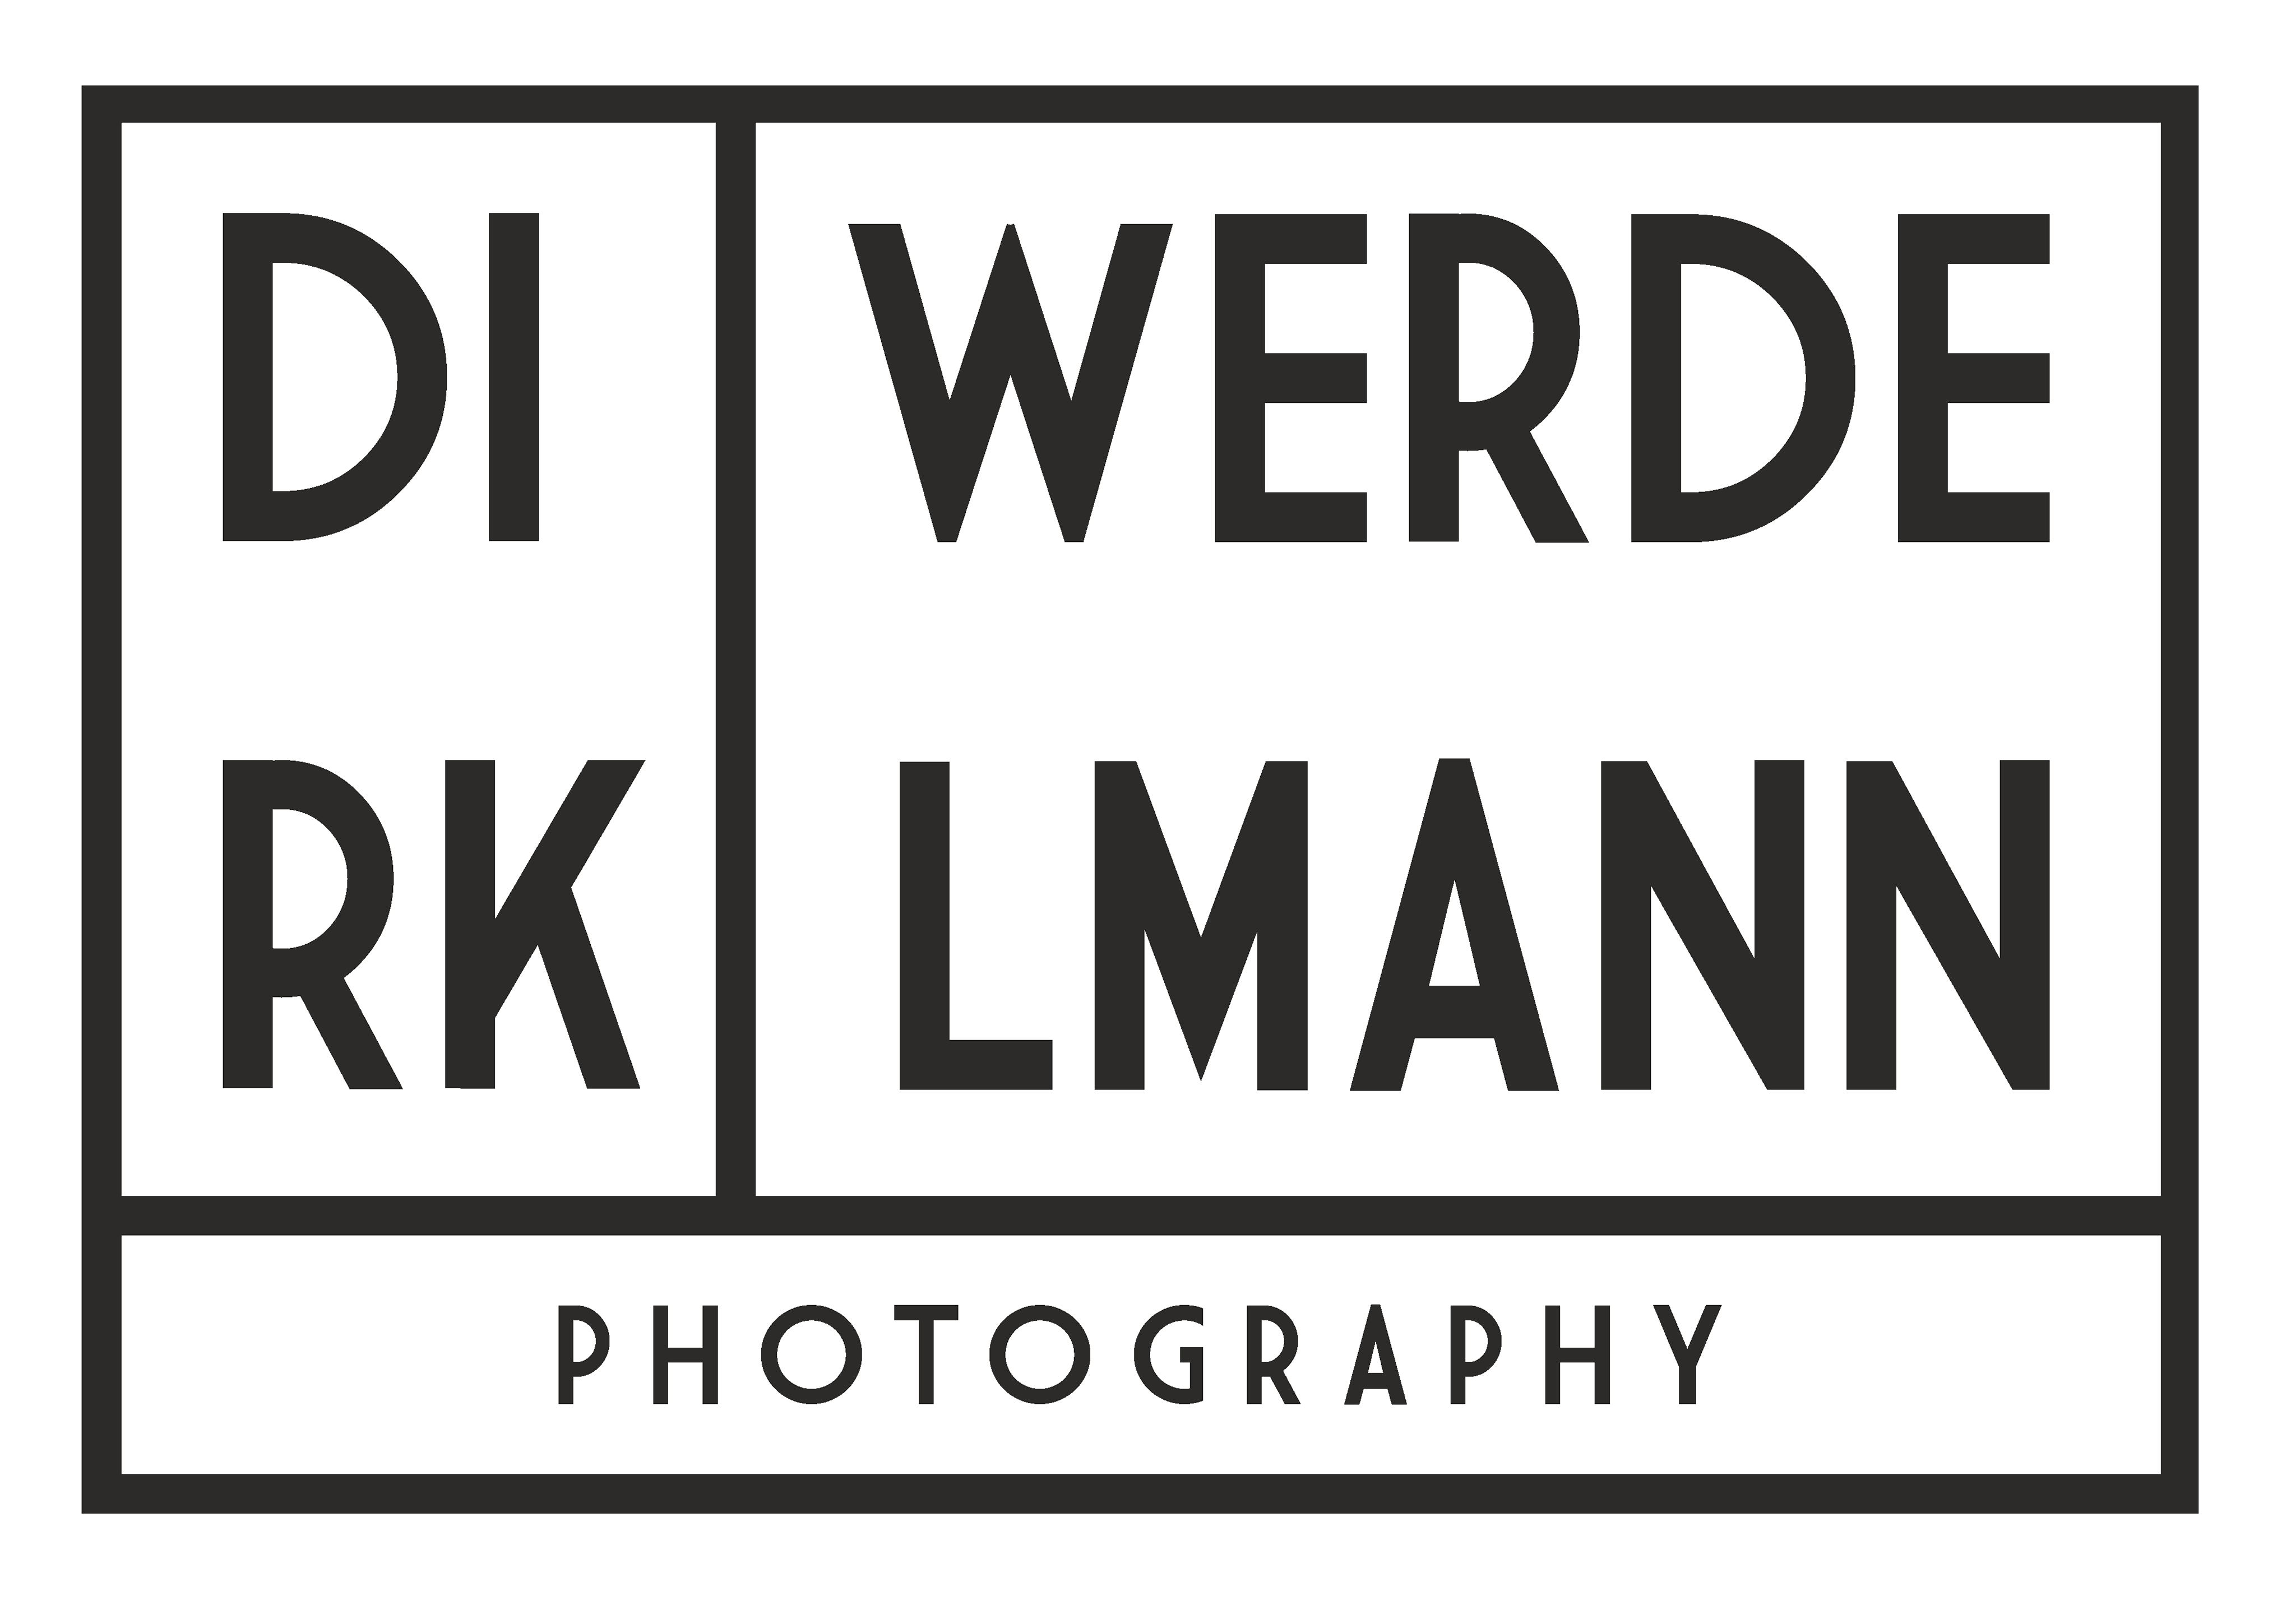 Dirk Werdelmann Photography